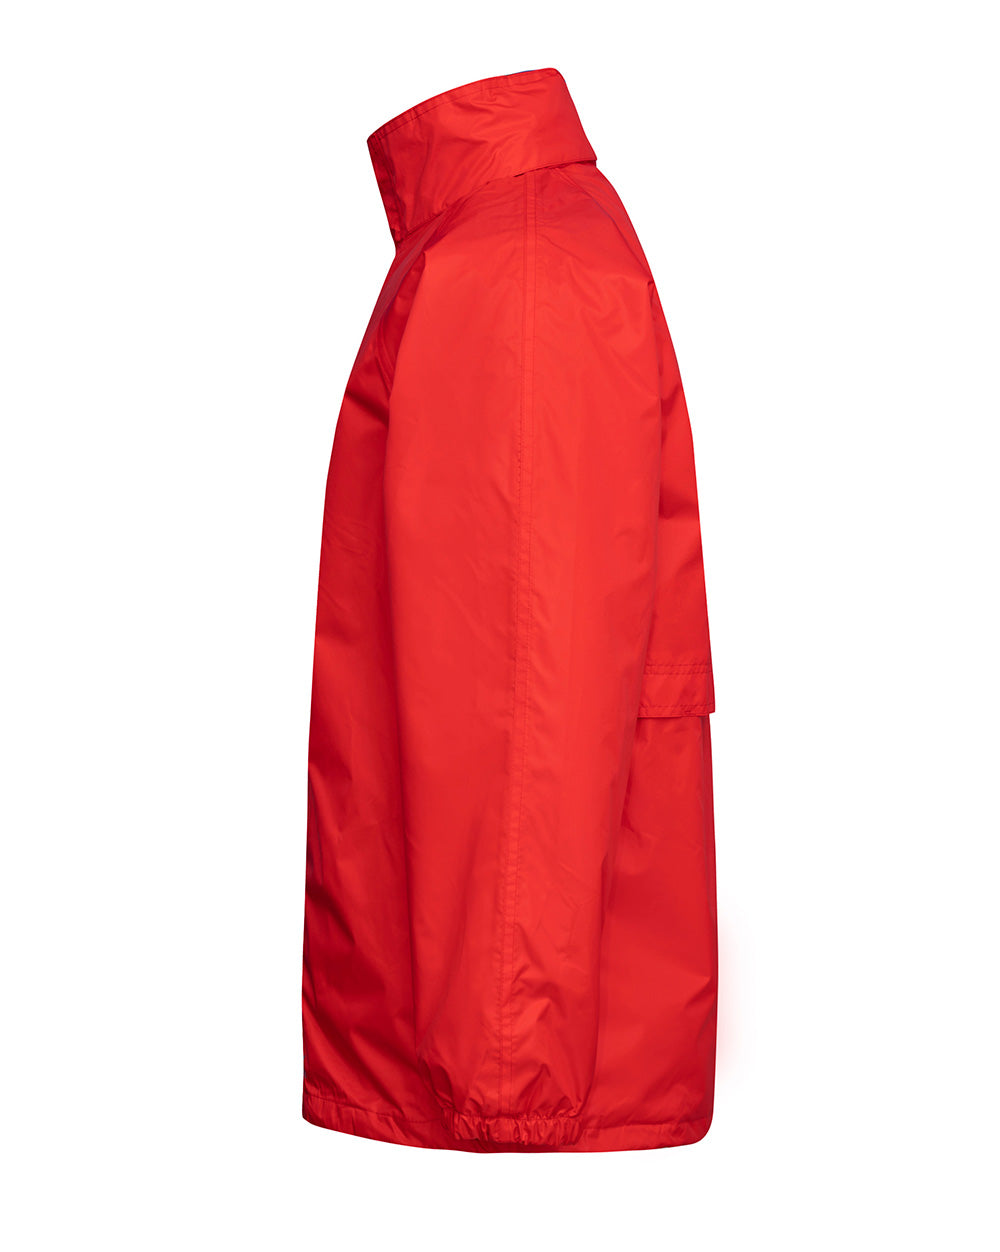 STOWaway Jacket in Red